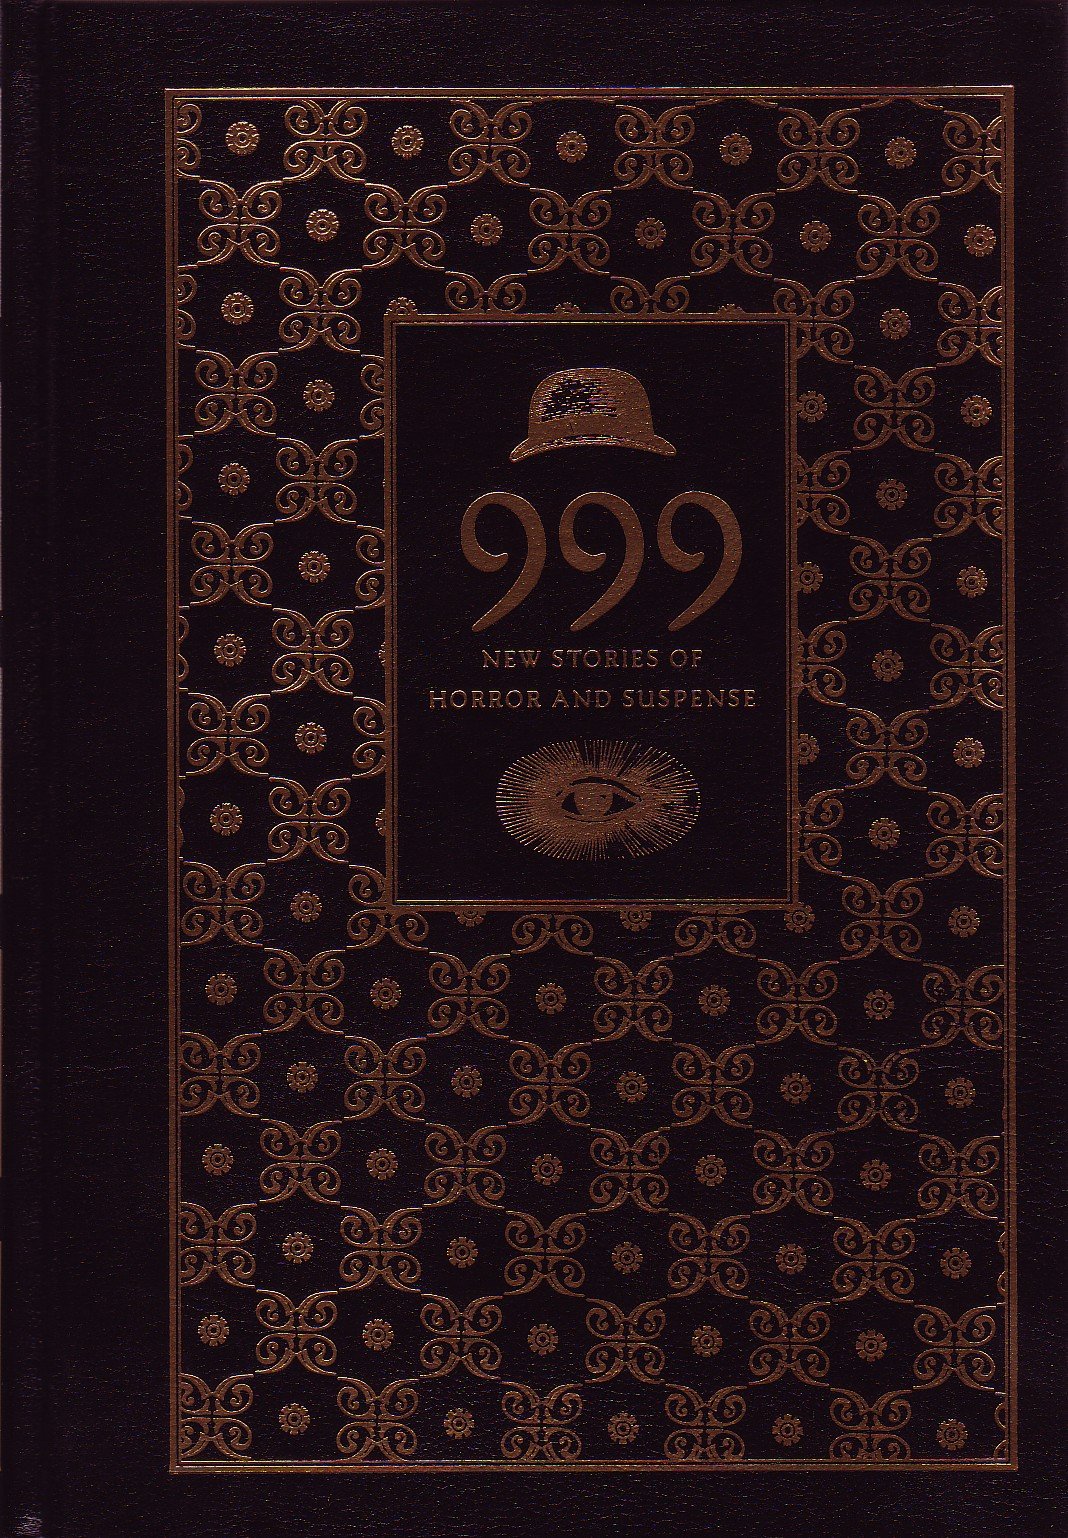 999: Cemetery Dance Publications